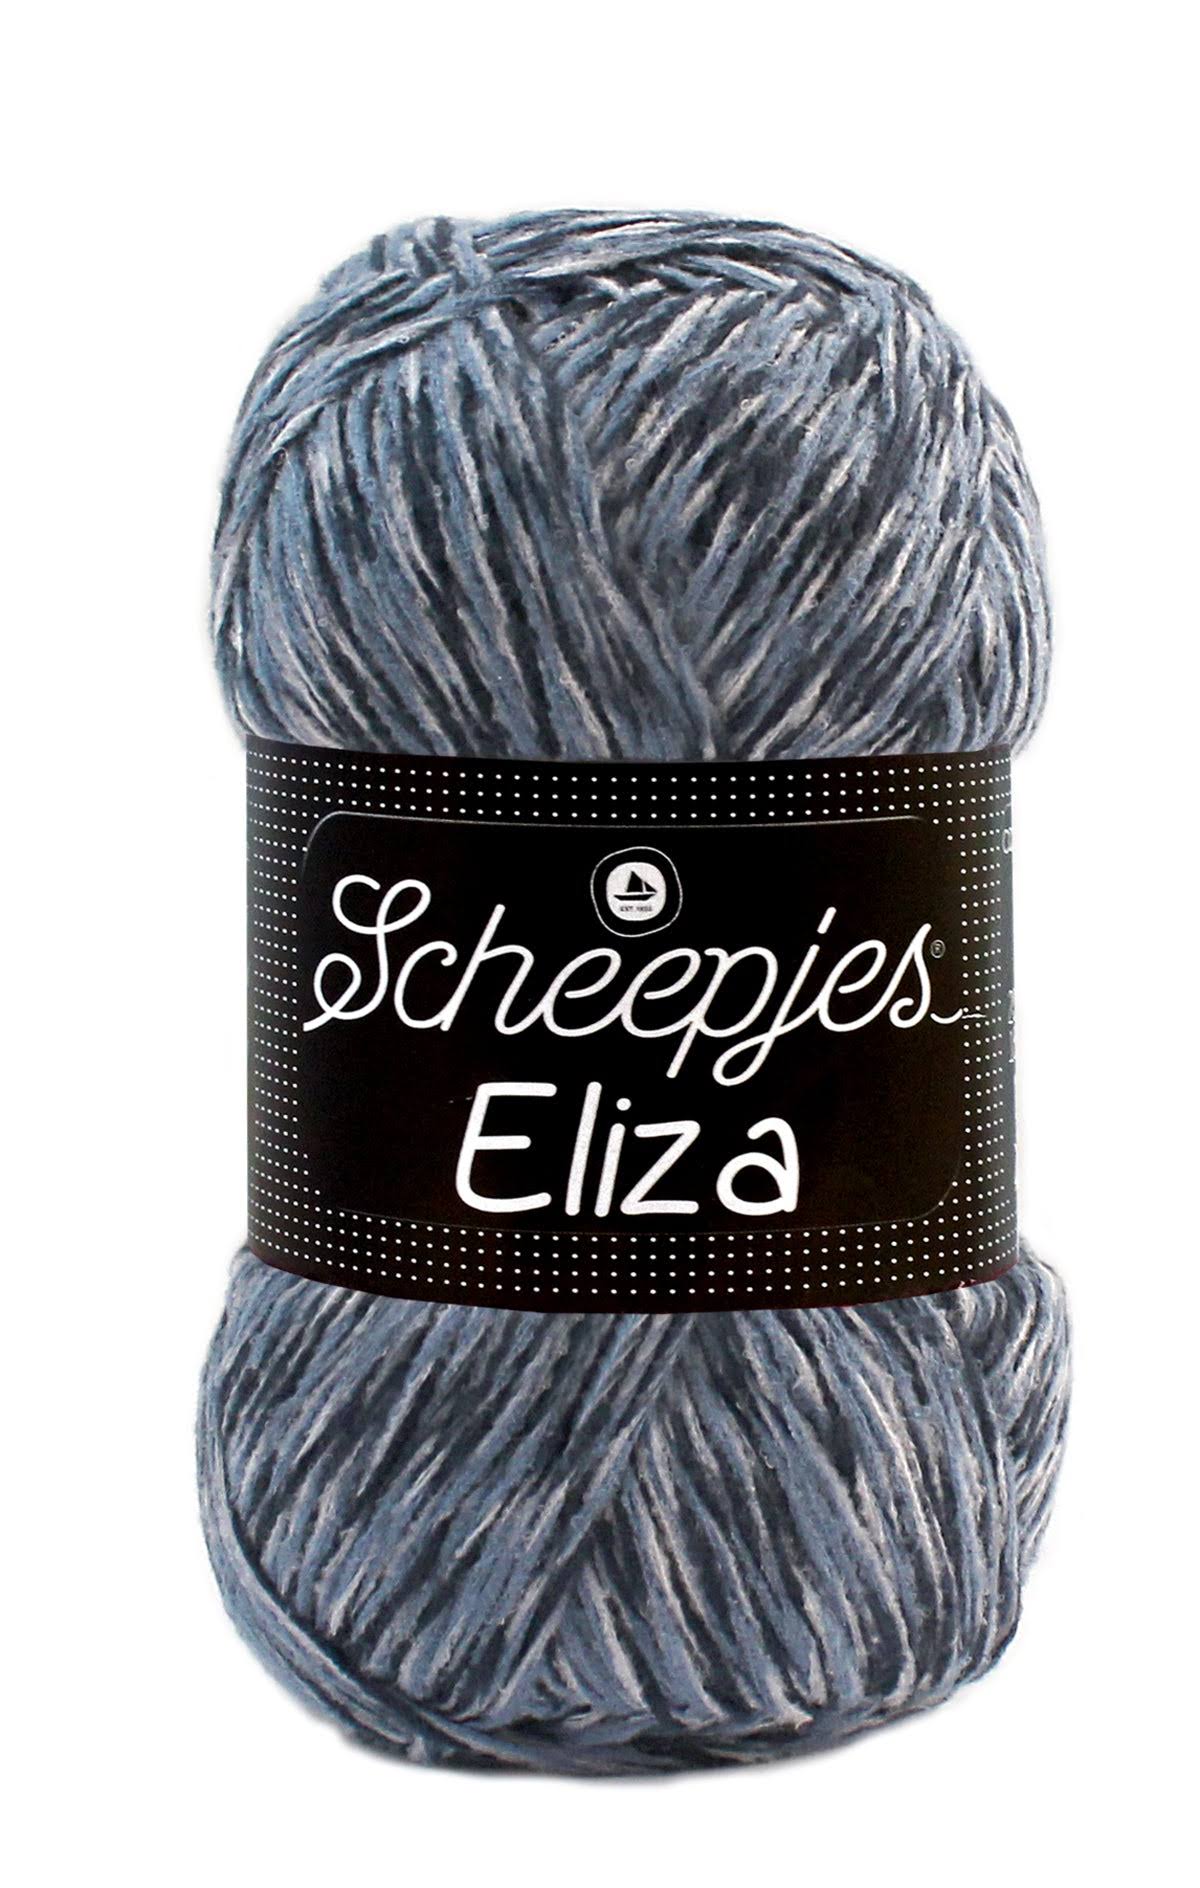 Scheepjes Eliza DK Weight Blue/Grey Yarn 100g - 204 Pond Dipping